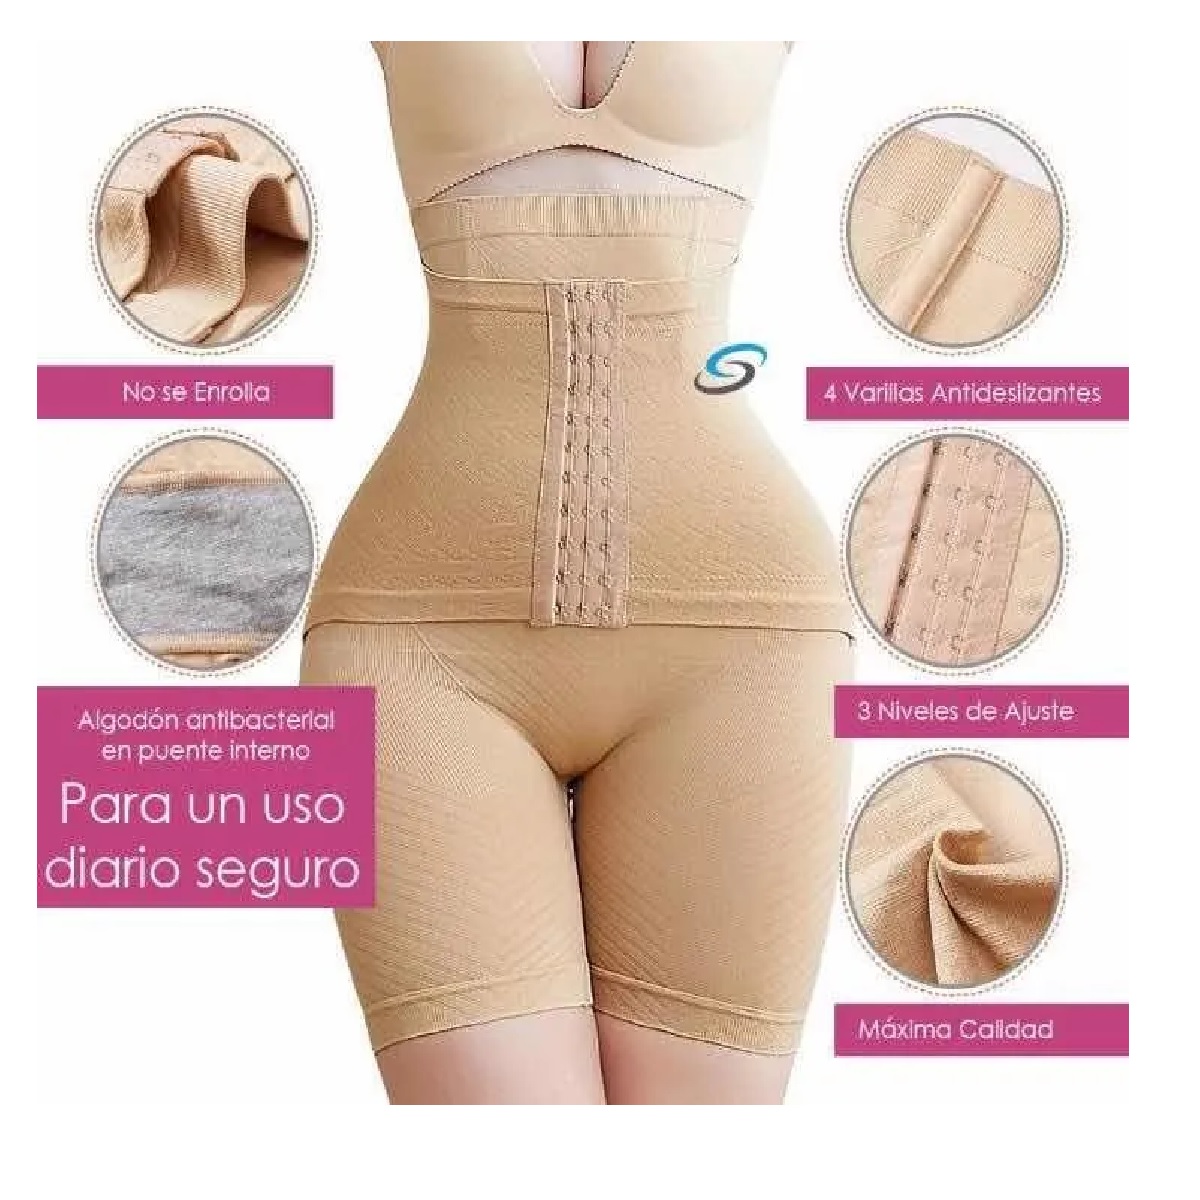 Buy SHAPERX Faja Colombiana Reductora de Abdomen y Cintura Tummy